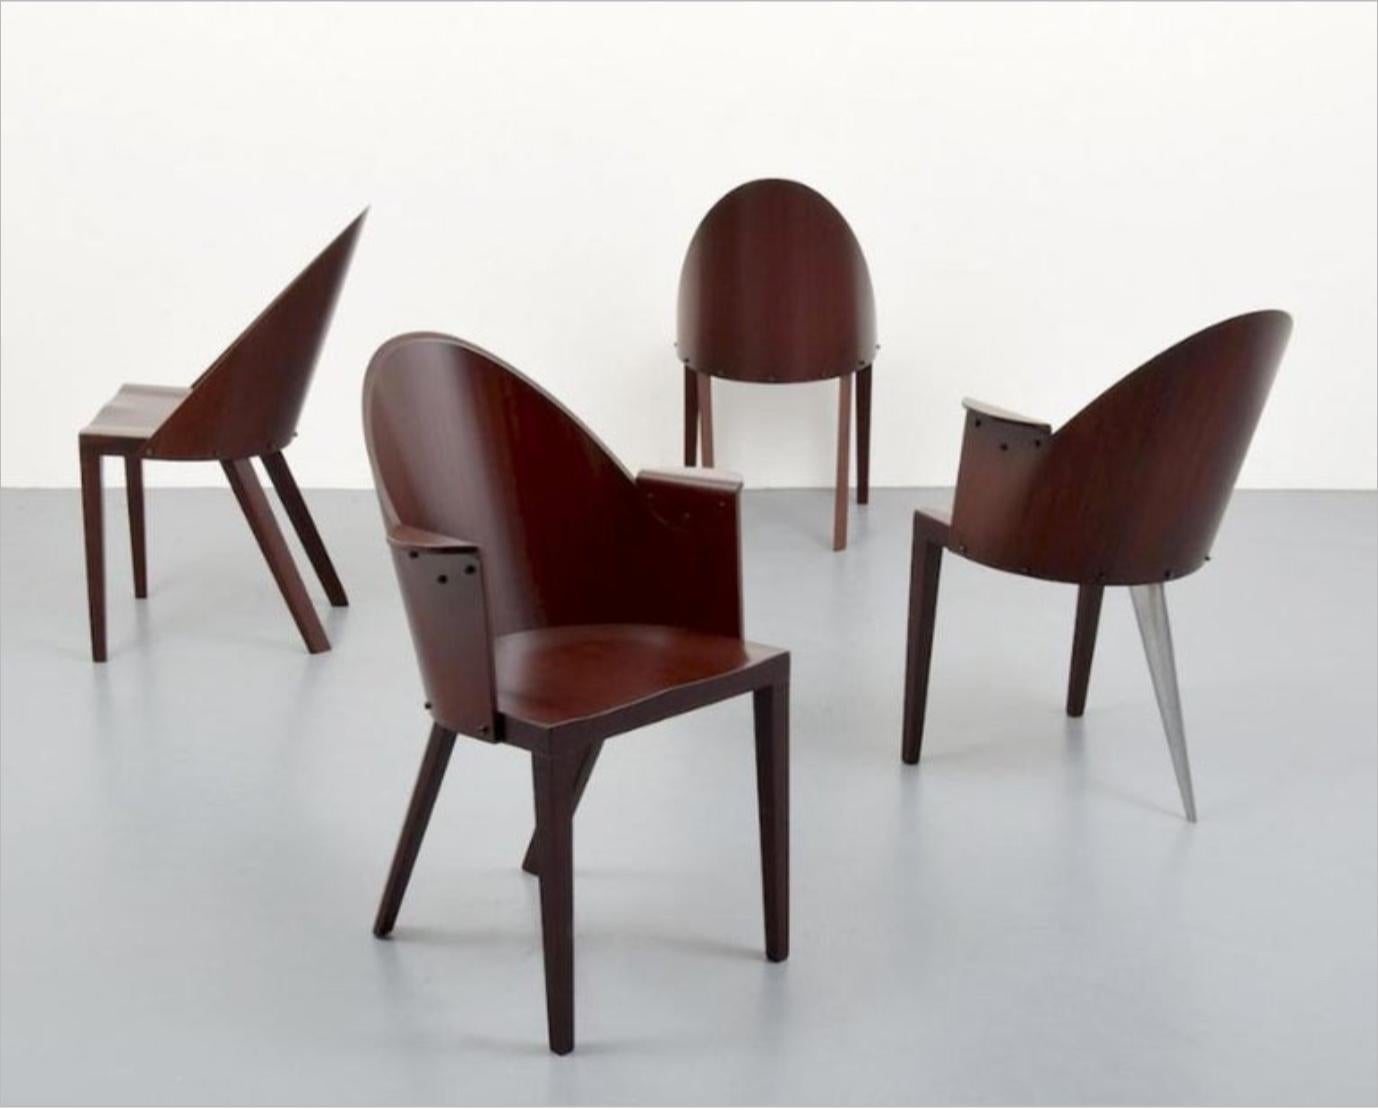 Satz von 4 seltenen 4 Philippe Starck Stühlen aus dem Royalton Hotel, NYC.

Dieses Set besteht aus zwei Sesseln und zwei Beistellstühlen. Ein Sessel ist die dreibeinige Form.

Original-Etiketten.

Das Royalton Hotel befindet sich östlich des